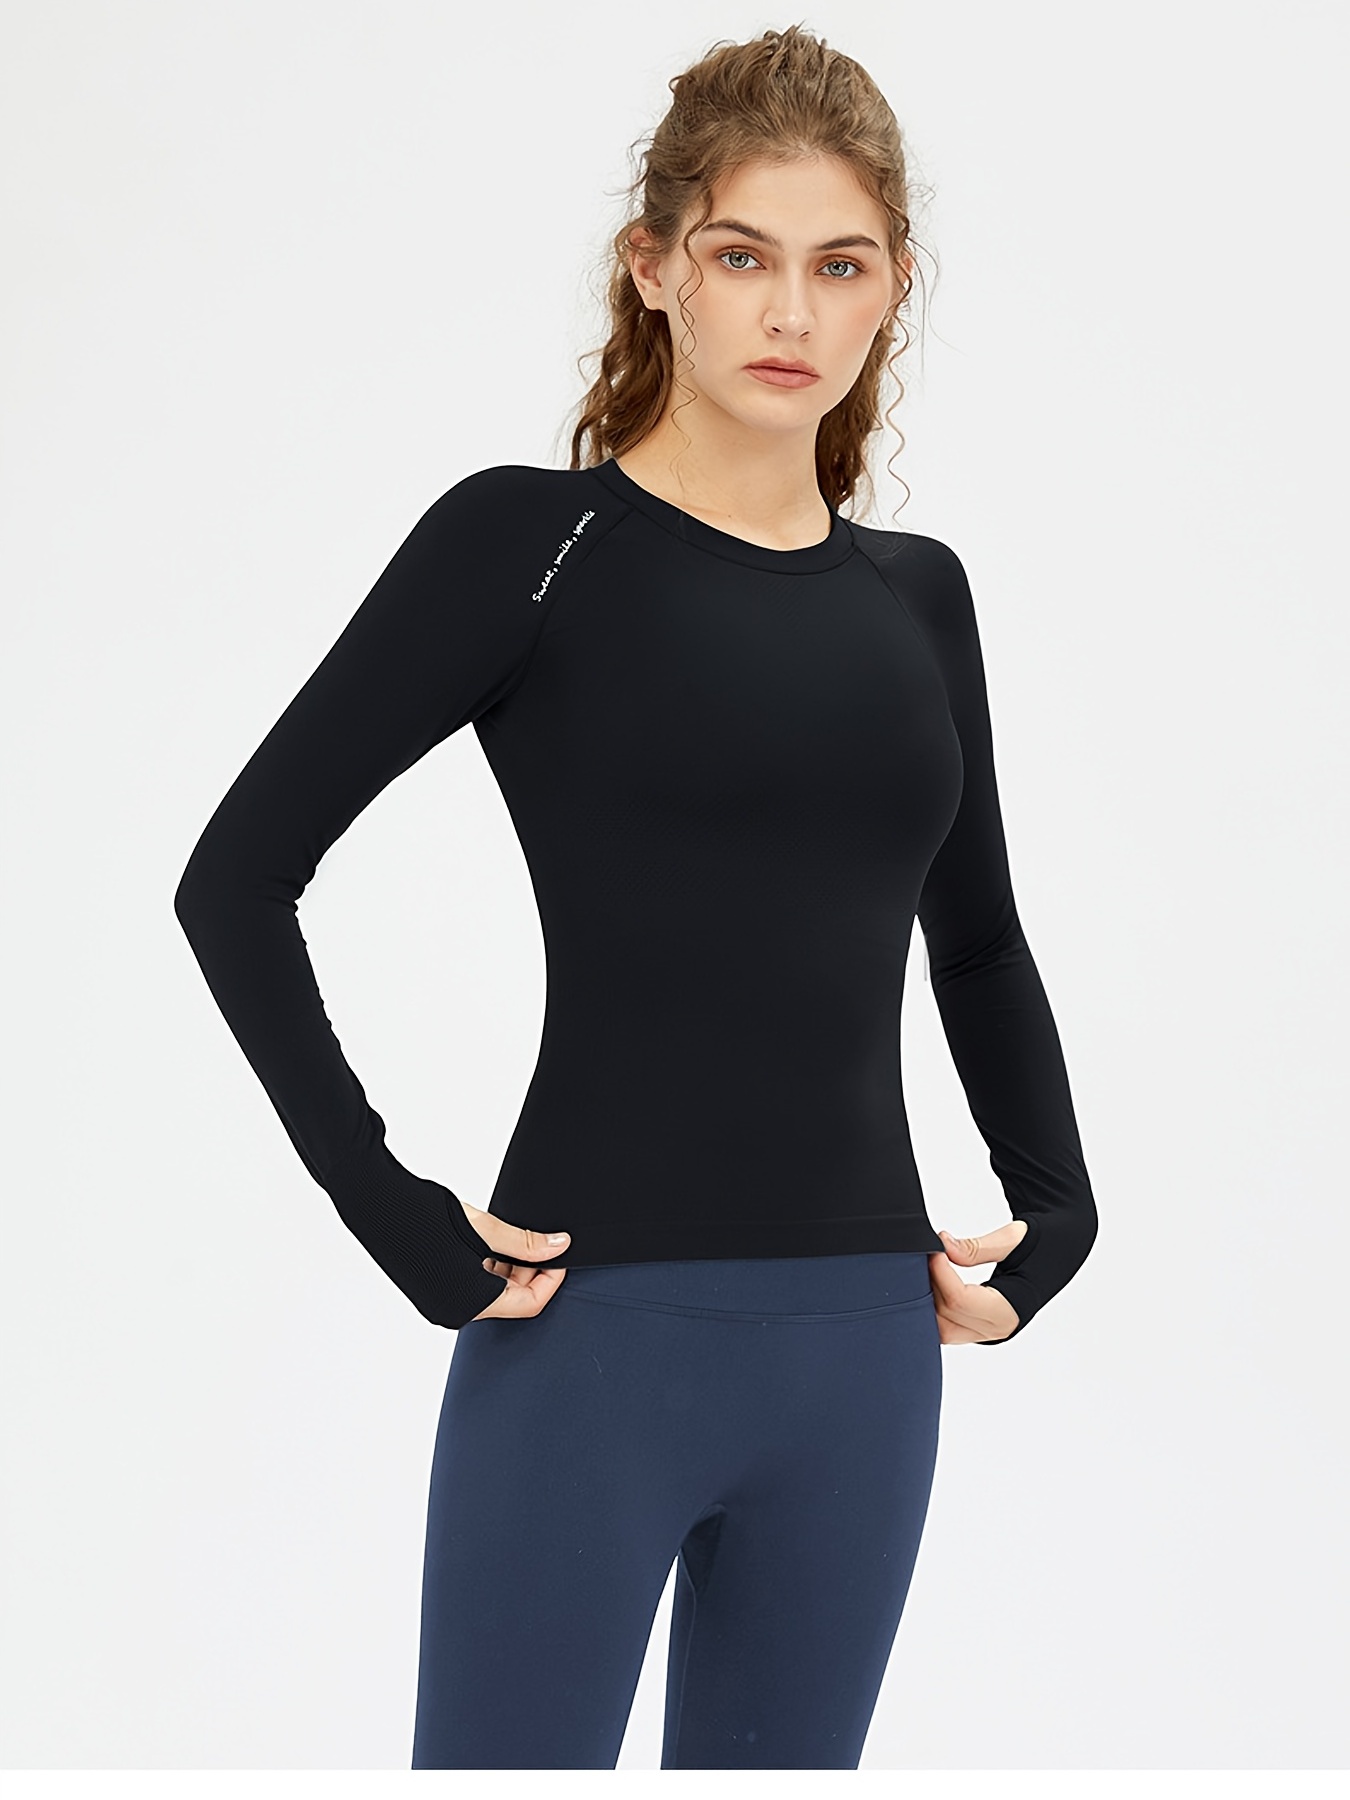 Full Sleeve Yoga T Shirt For Women – Ekchala